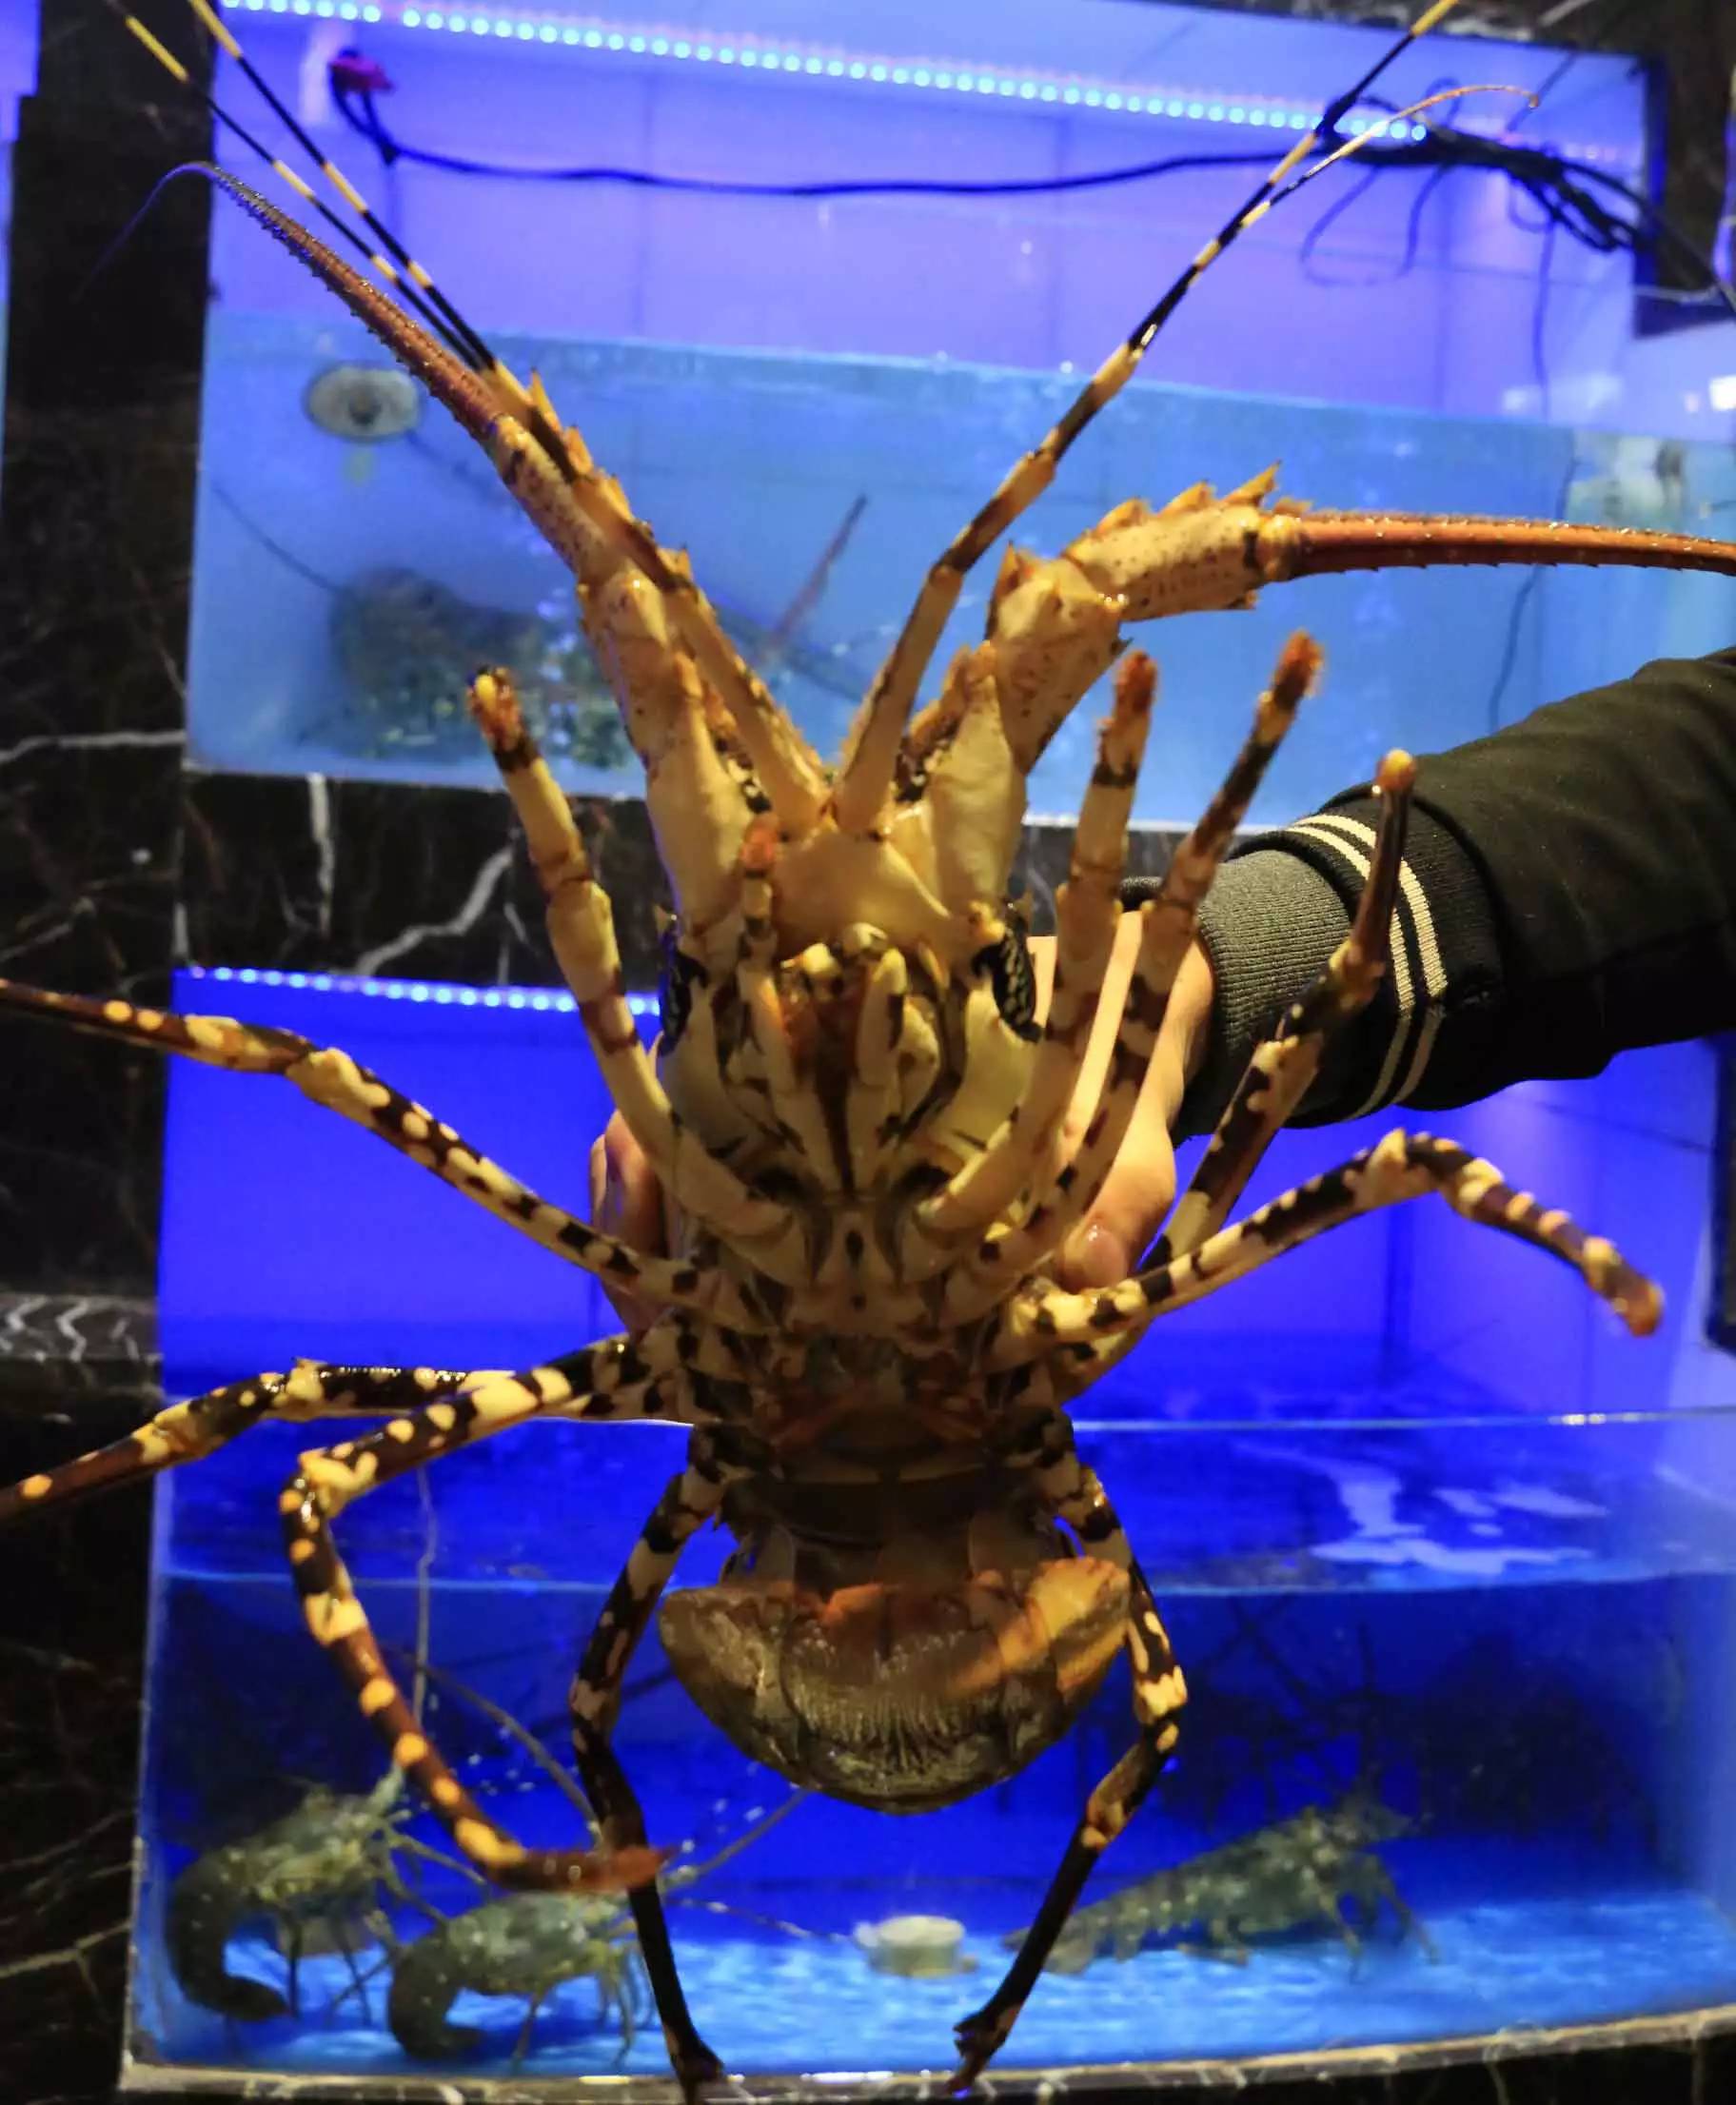 第一名超大的澳洲大龙虾,真真超级大!